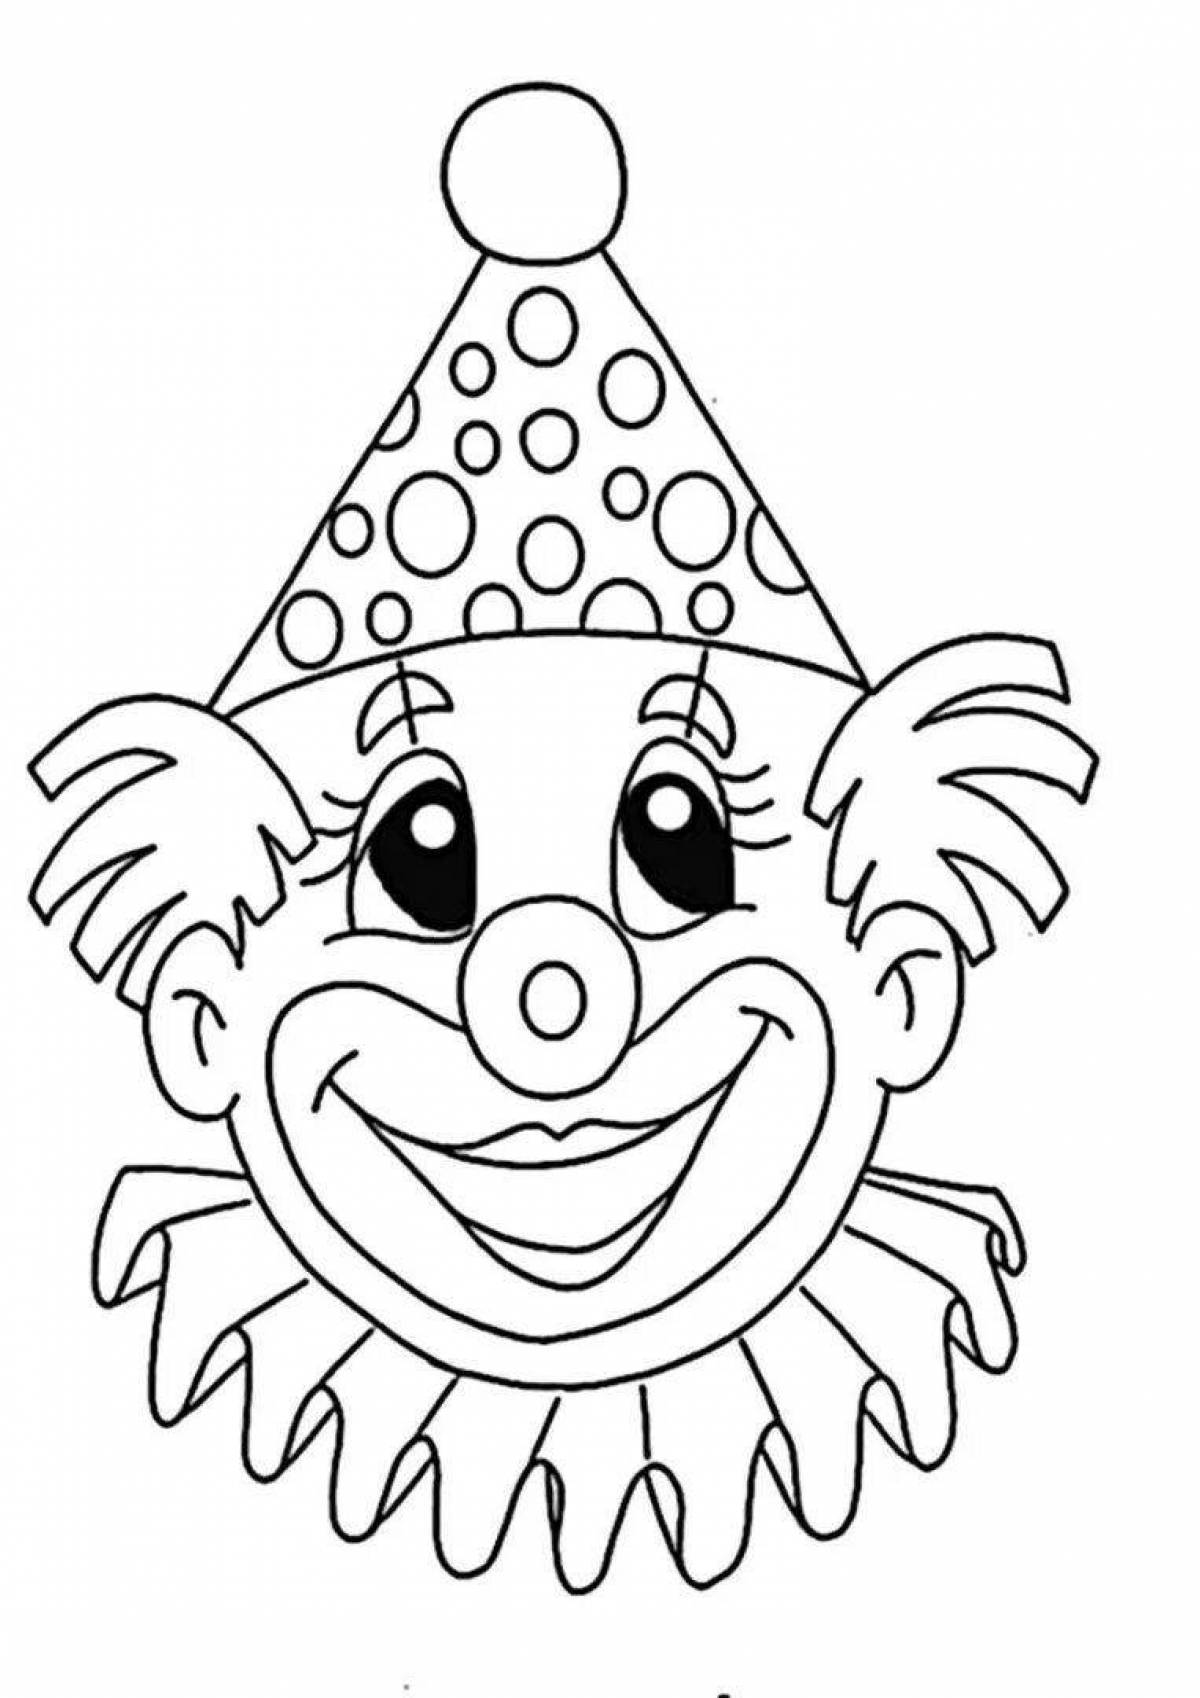 Анимированная страница раскраски клоуна для детей